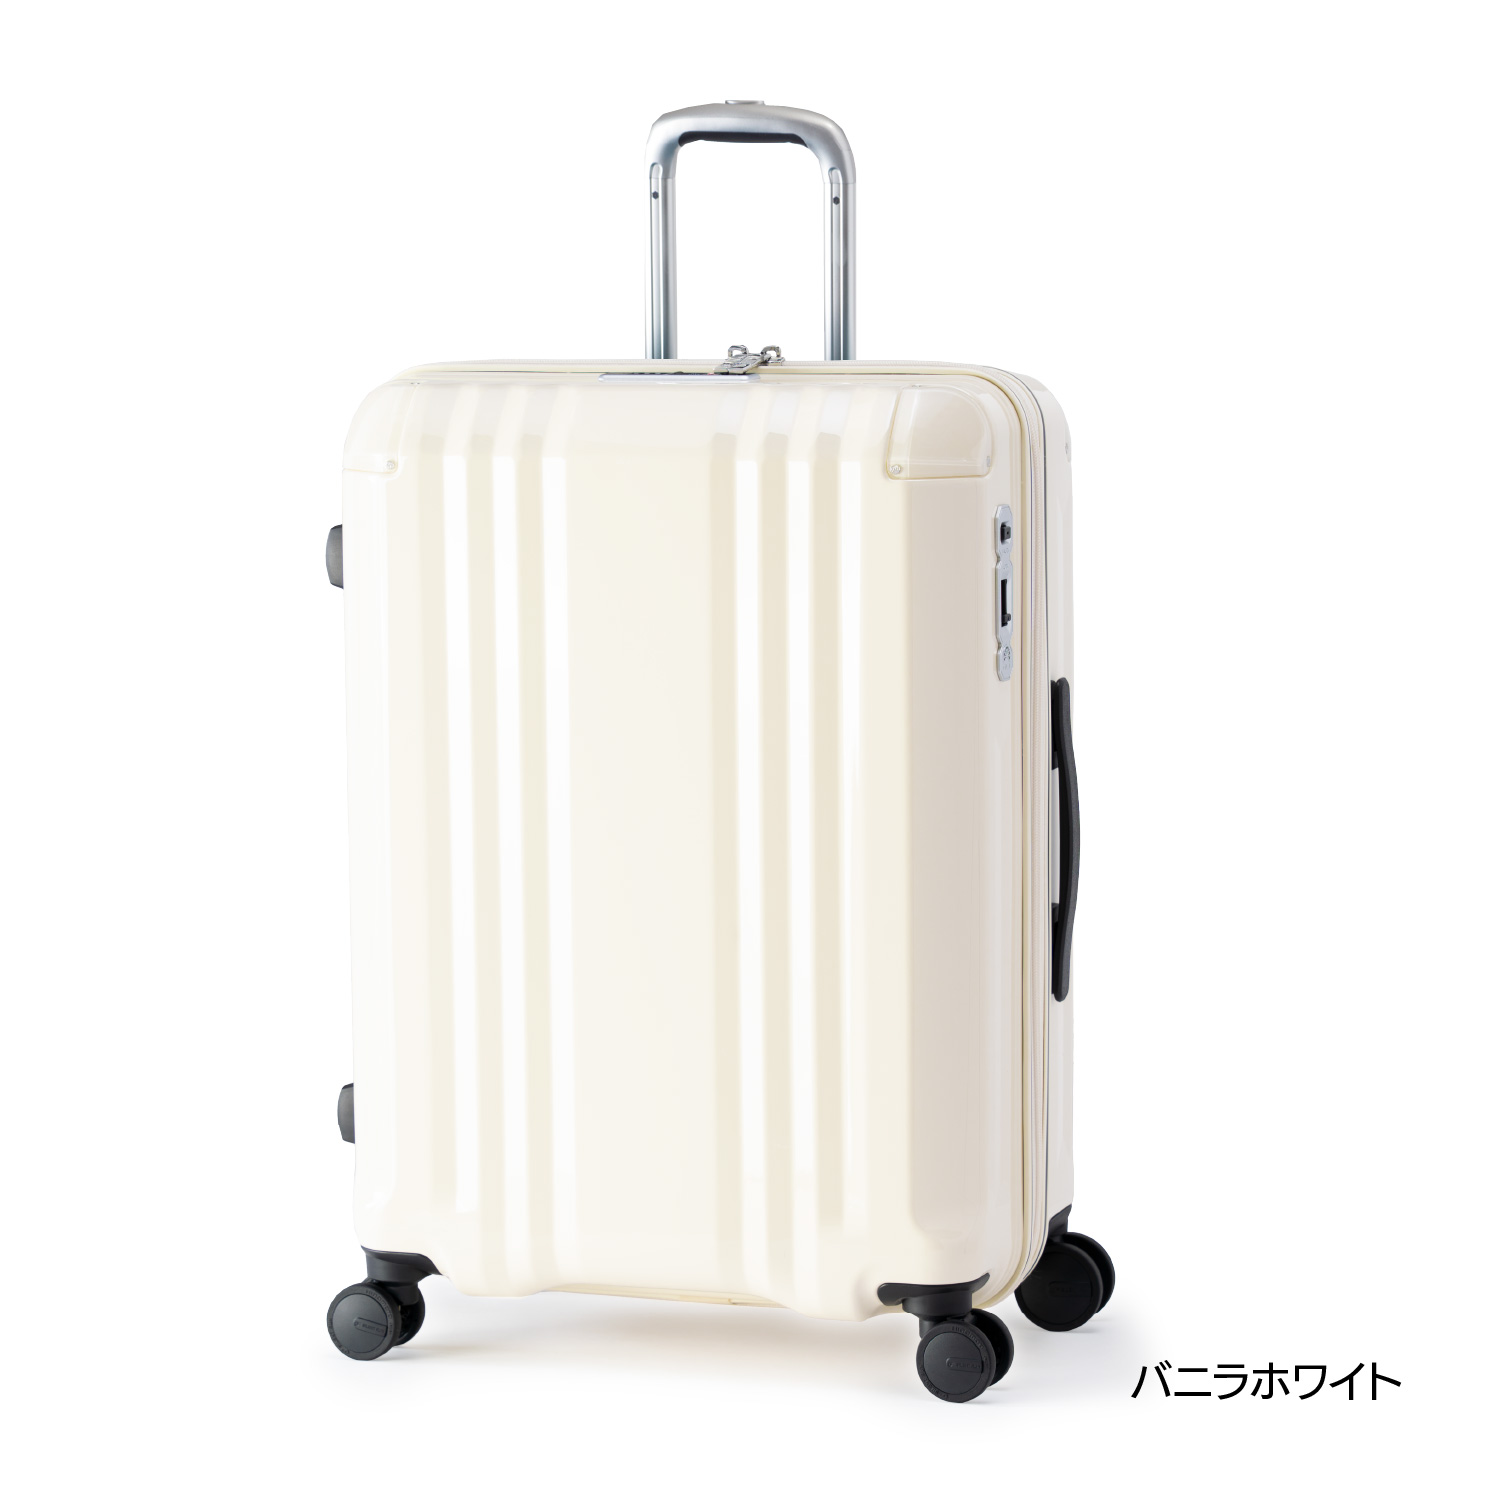 アジア・ラゲージのスーツケース デカかる   アジア・ラゲージ